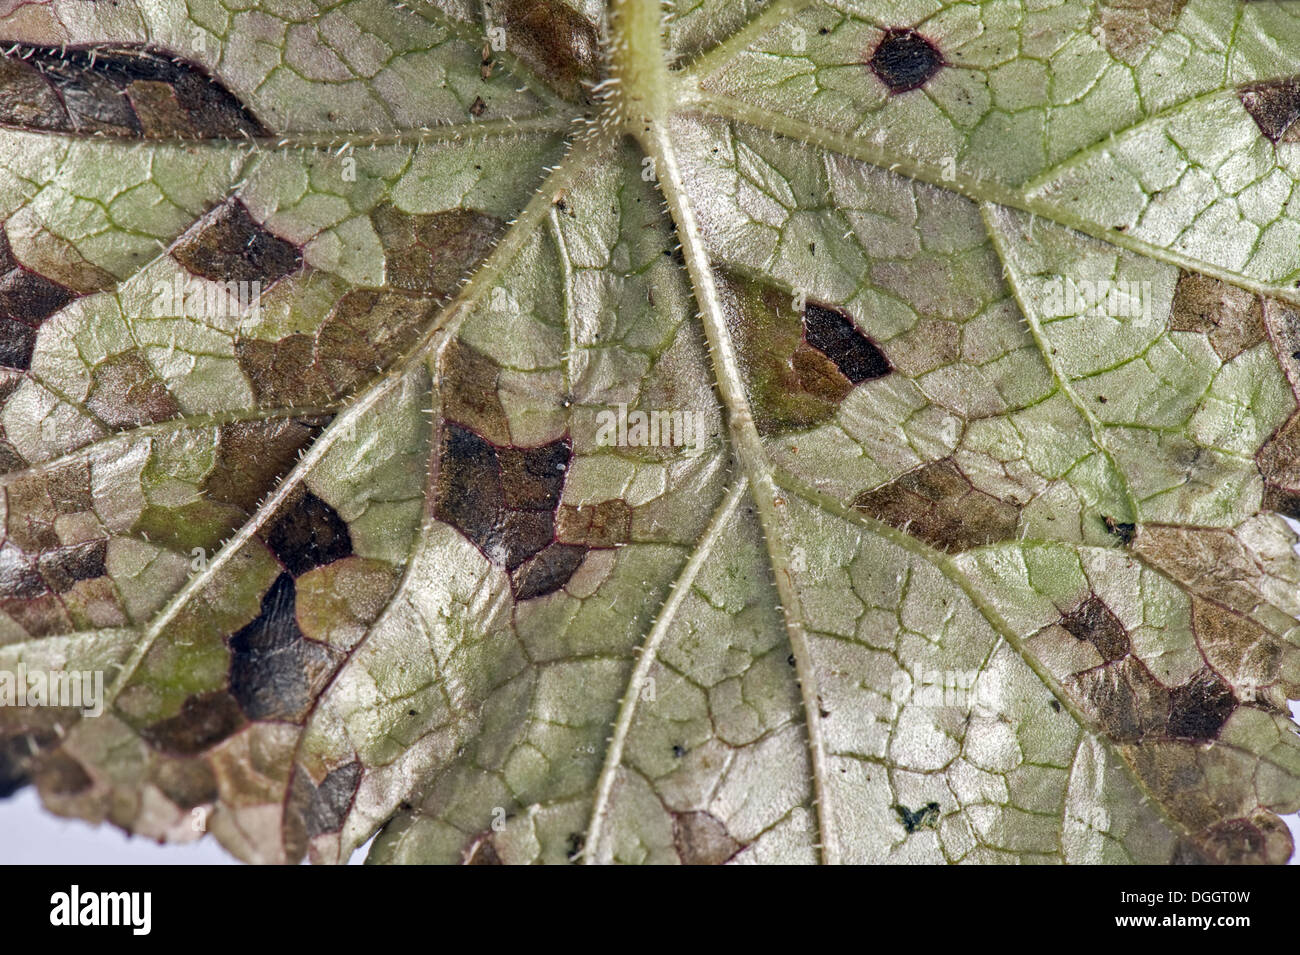 Blattdünger Nematoden, Aphelenchoides Spp, kantige Blatt Schmierblutungen an einer ornamentalen Anemone Pflanze Blatt Unterseite Stockfoto